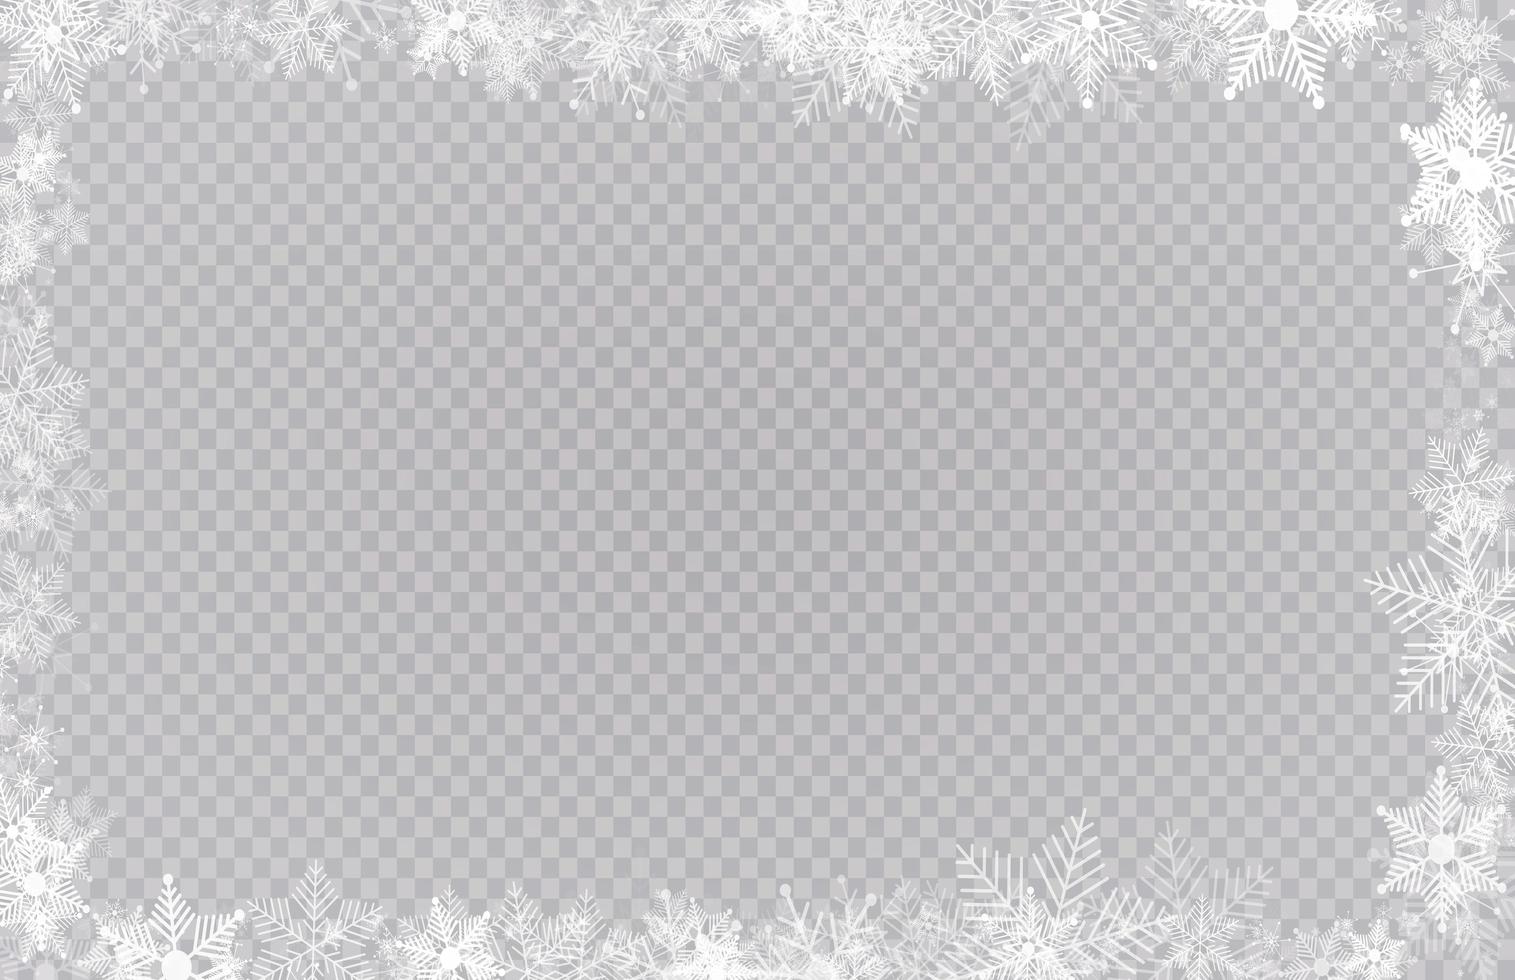 bordure de cadre de neige hiver rectangulaire avec étoiles, étincelles et flocons de neige vecteur